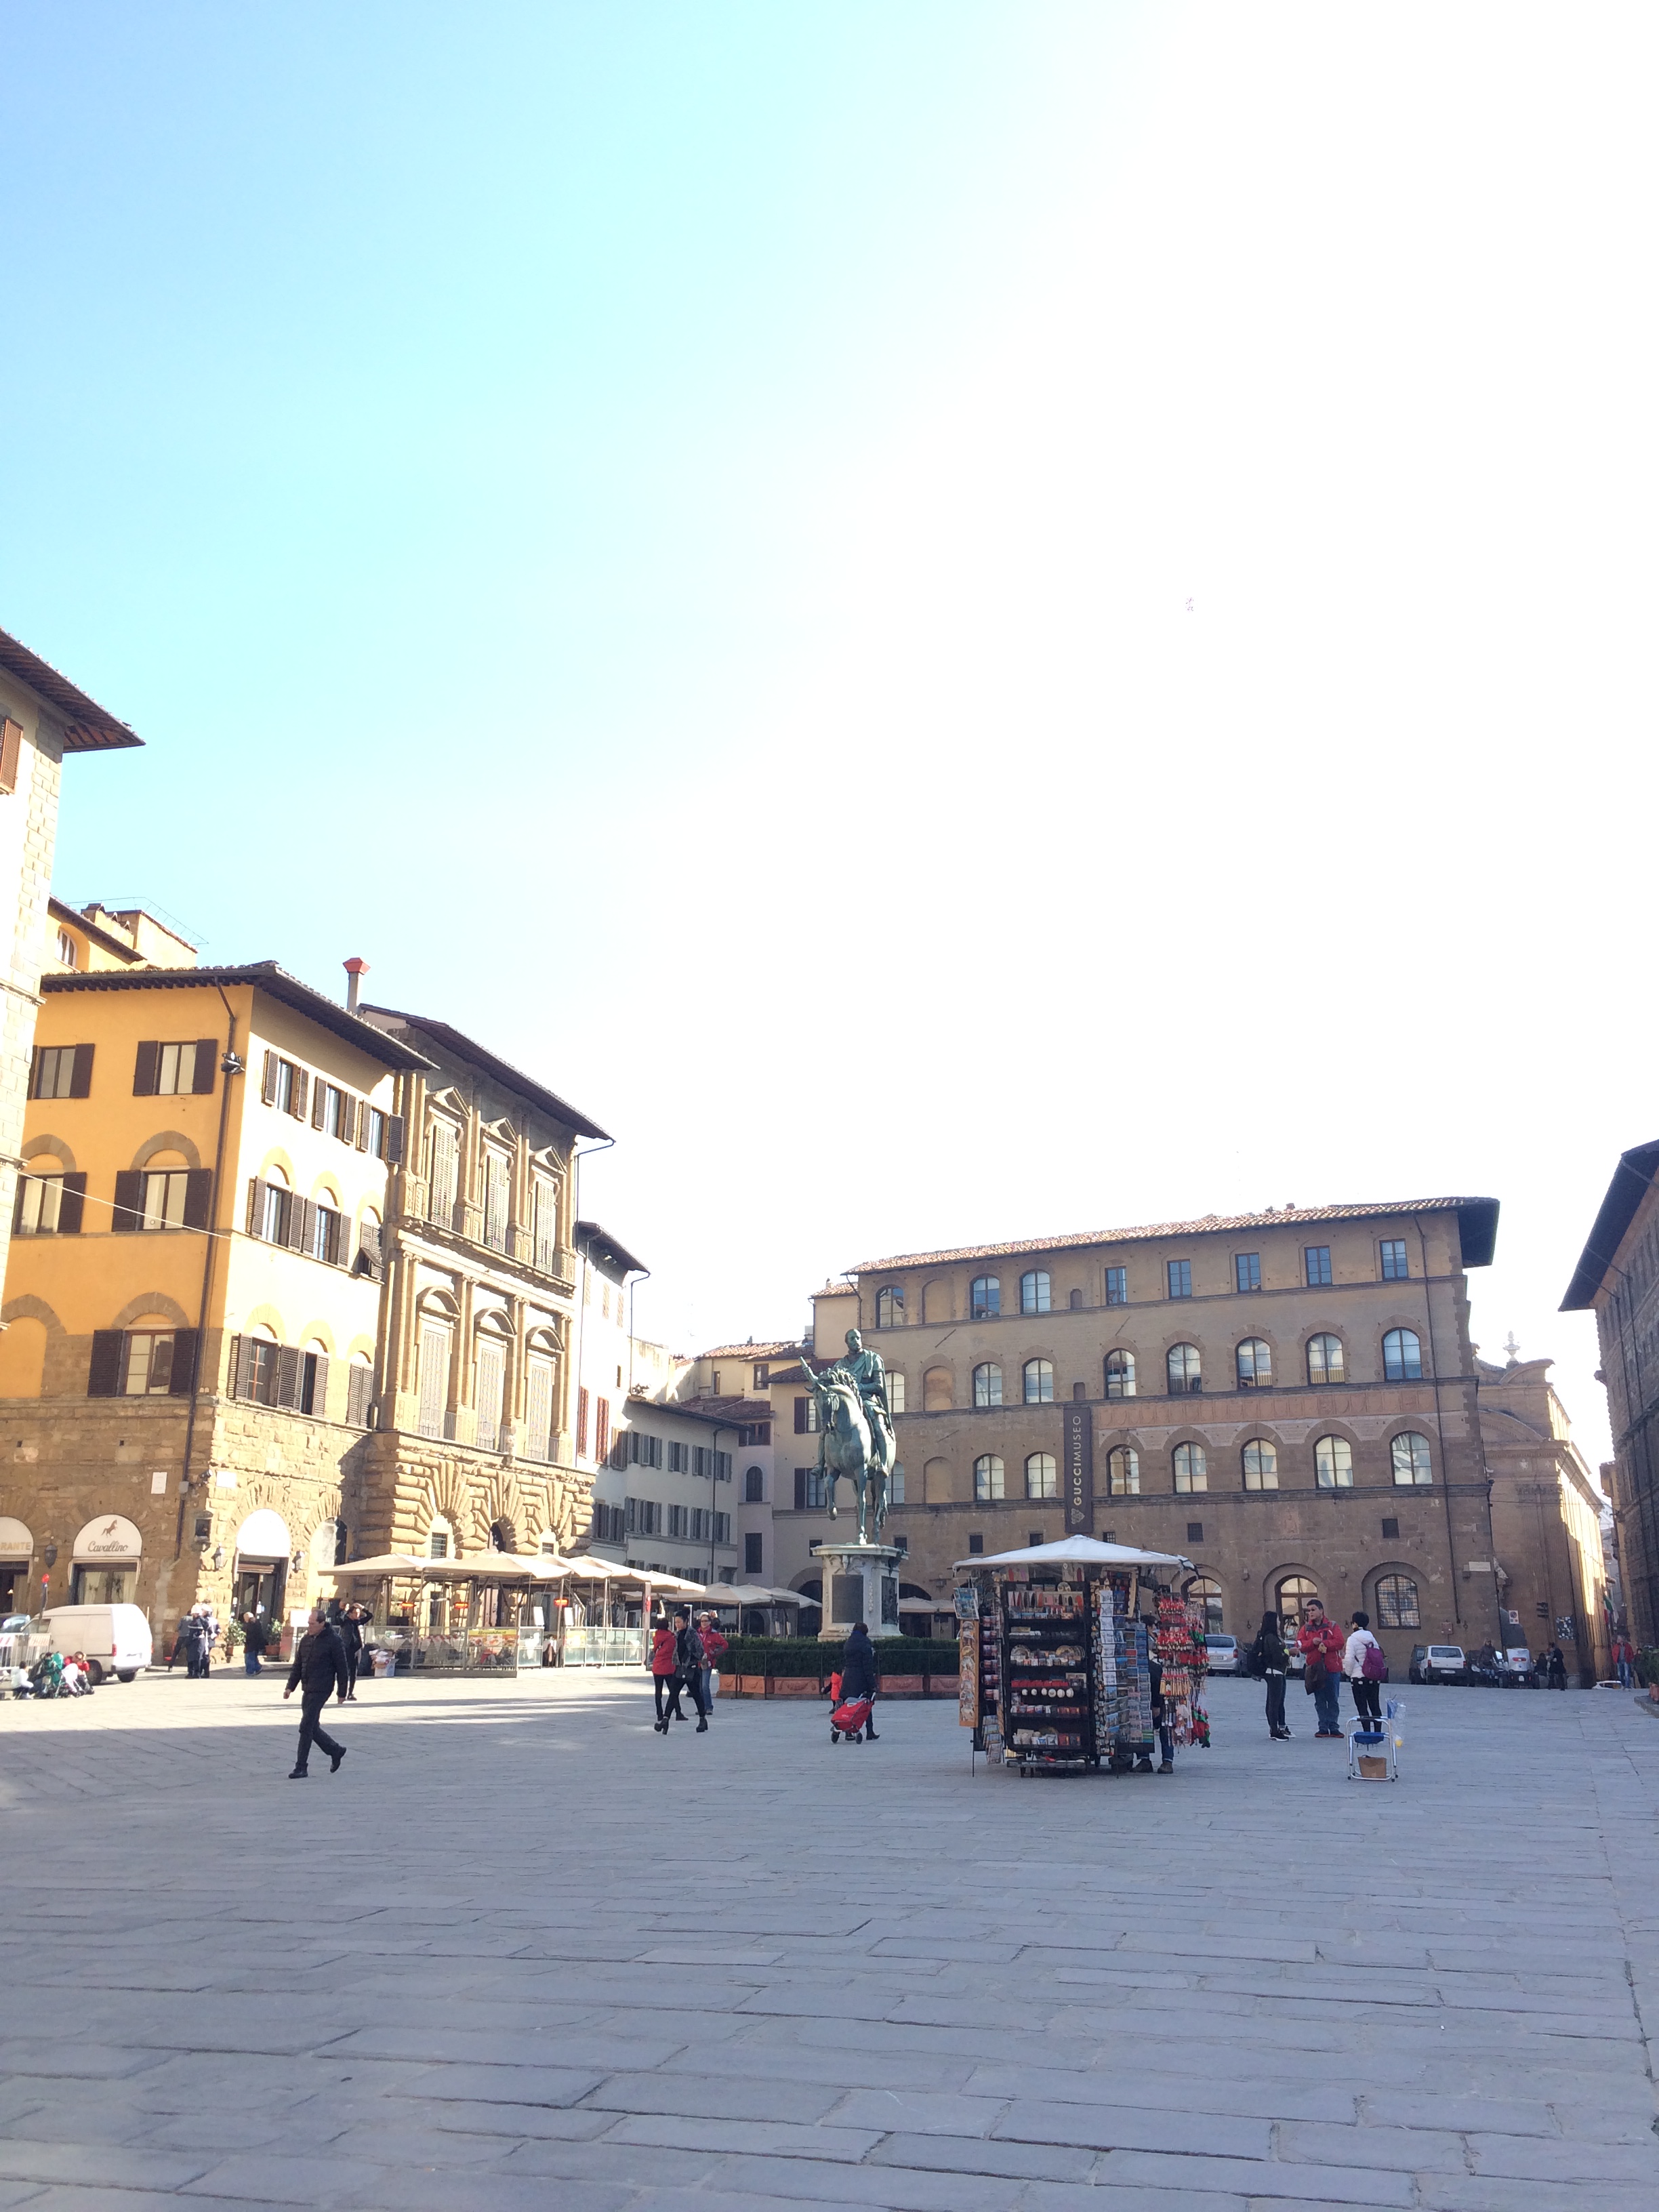 Image of the Piazza della Signoria